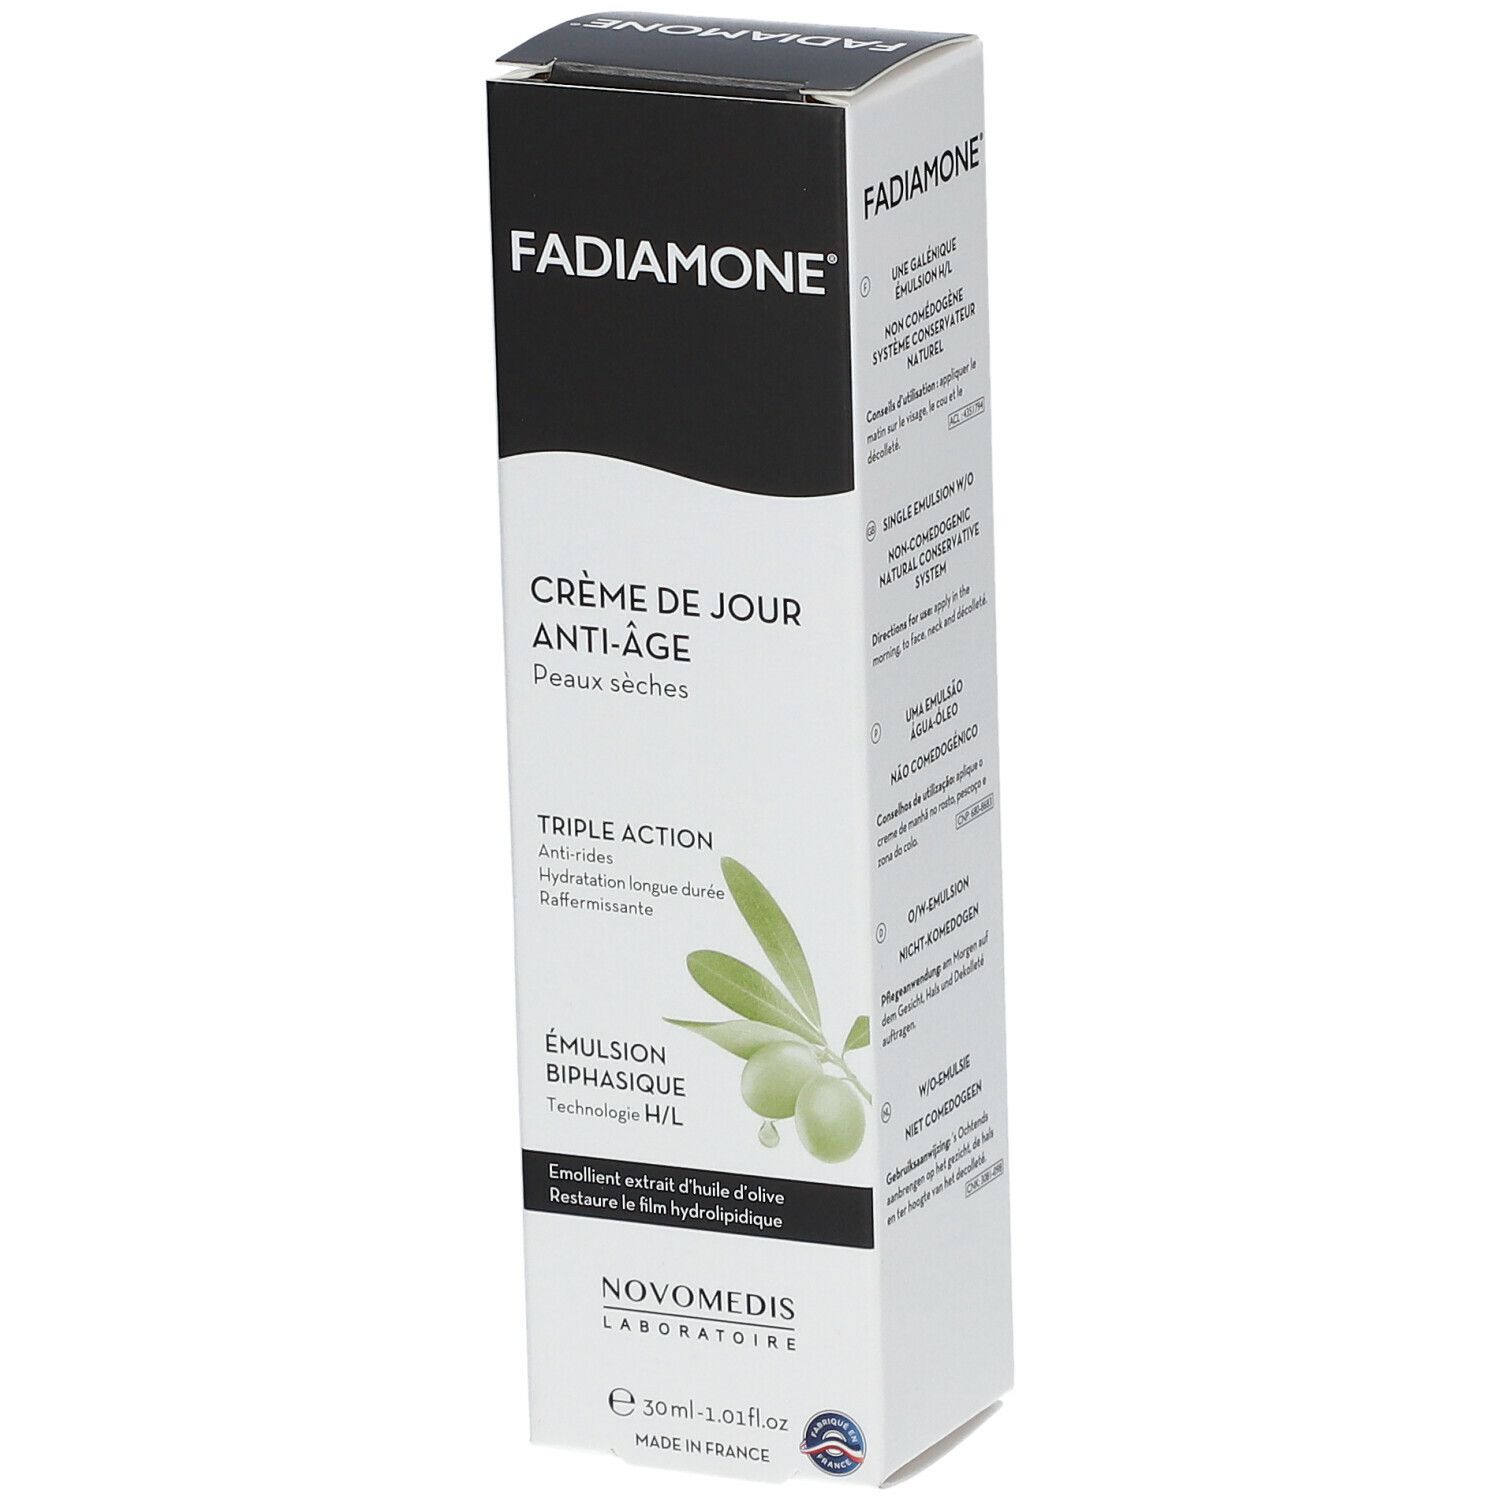 Fadiamone® Crème de jour Anti-Âge peaux sèches